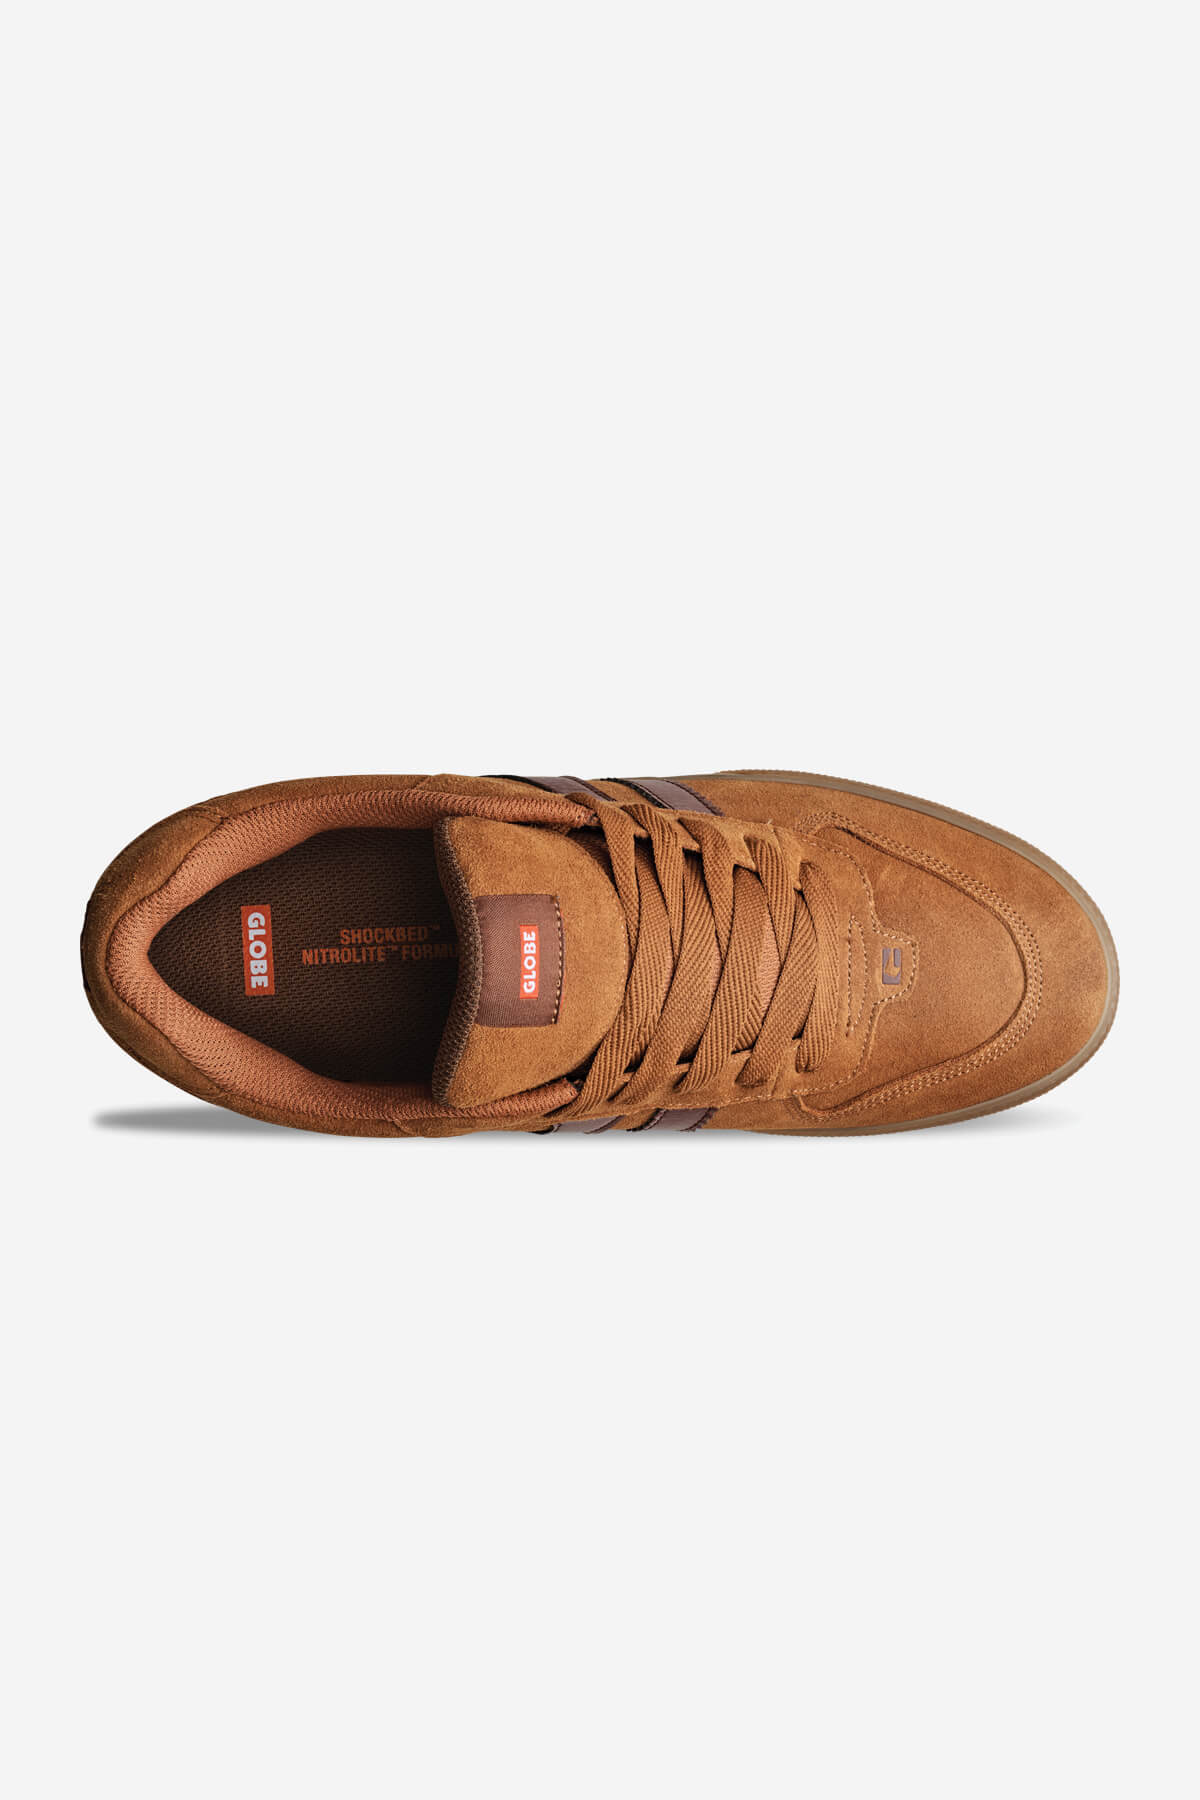 encore-2 butterscotch brown skateboard schoenen